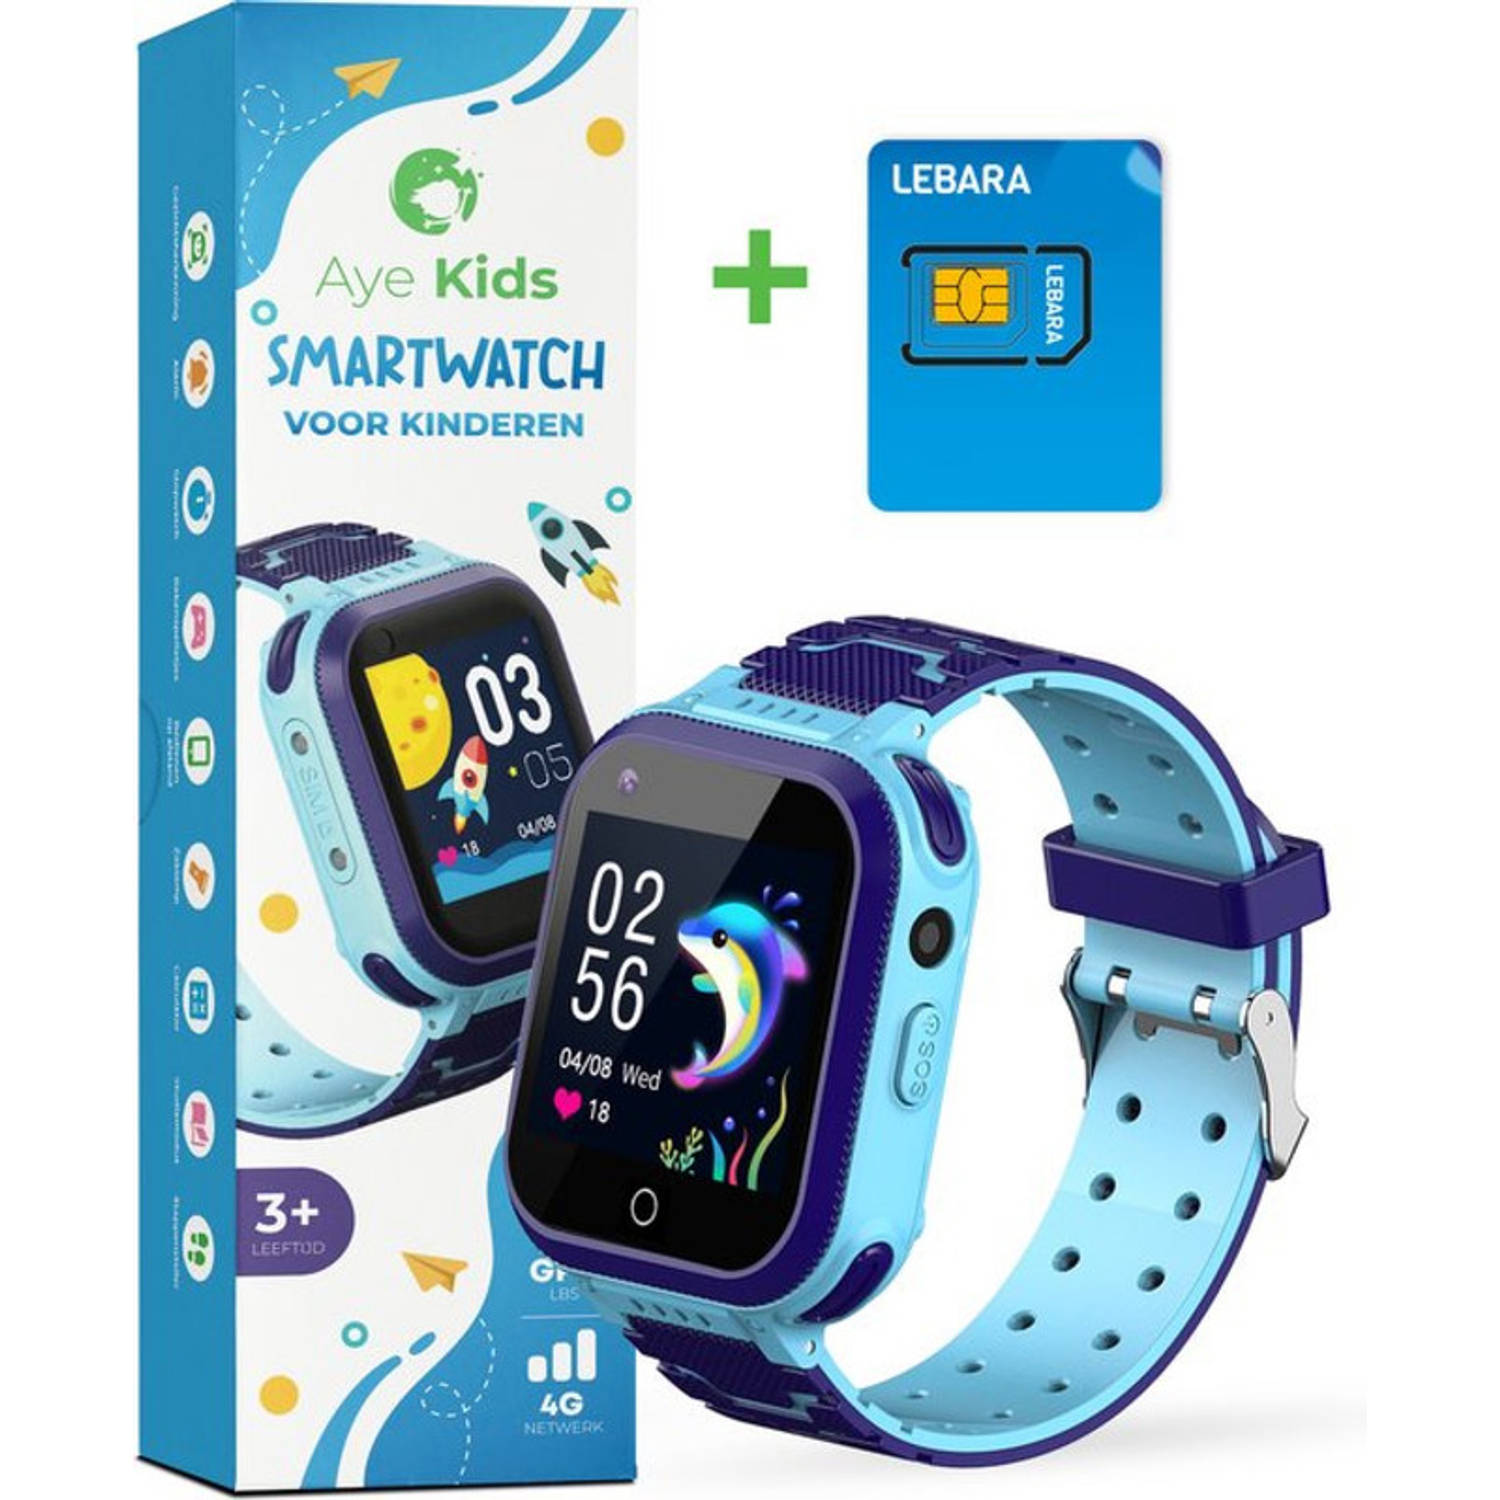 AyeKids SmartWatch Kinderen - GPS - 4G Netwerk - Incl Simkaart - GPS Horloge Kind - Blauw